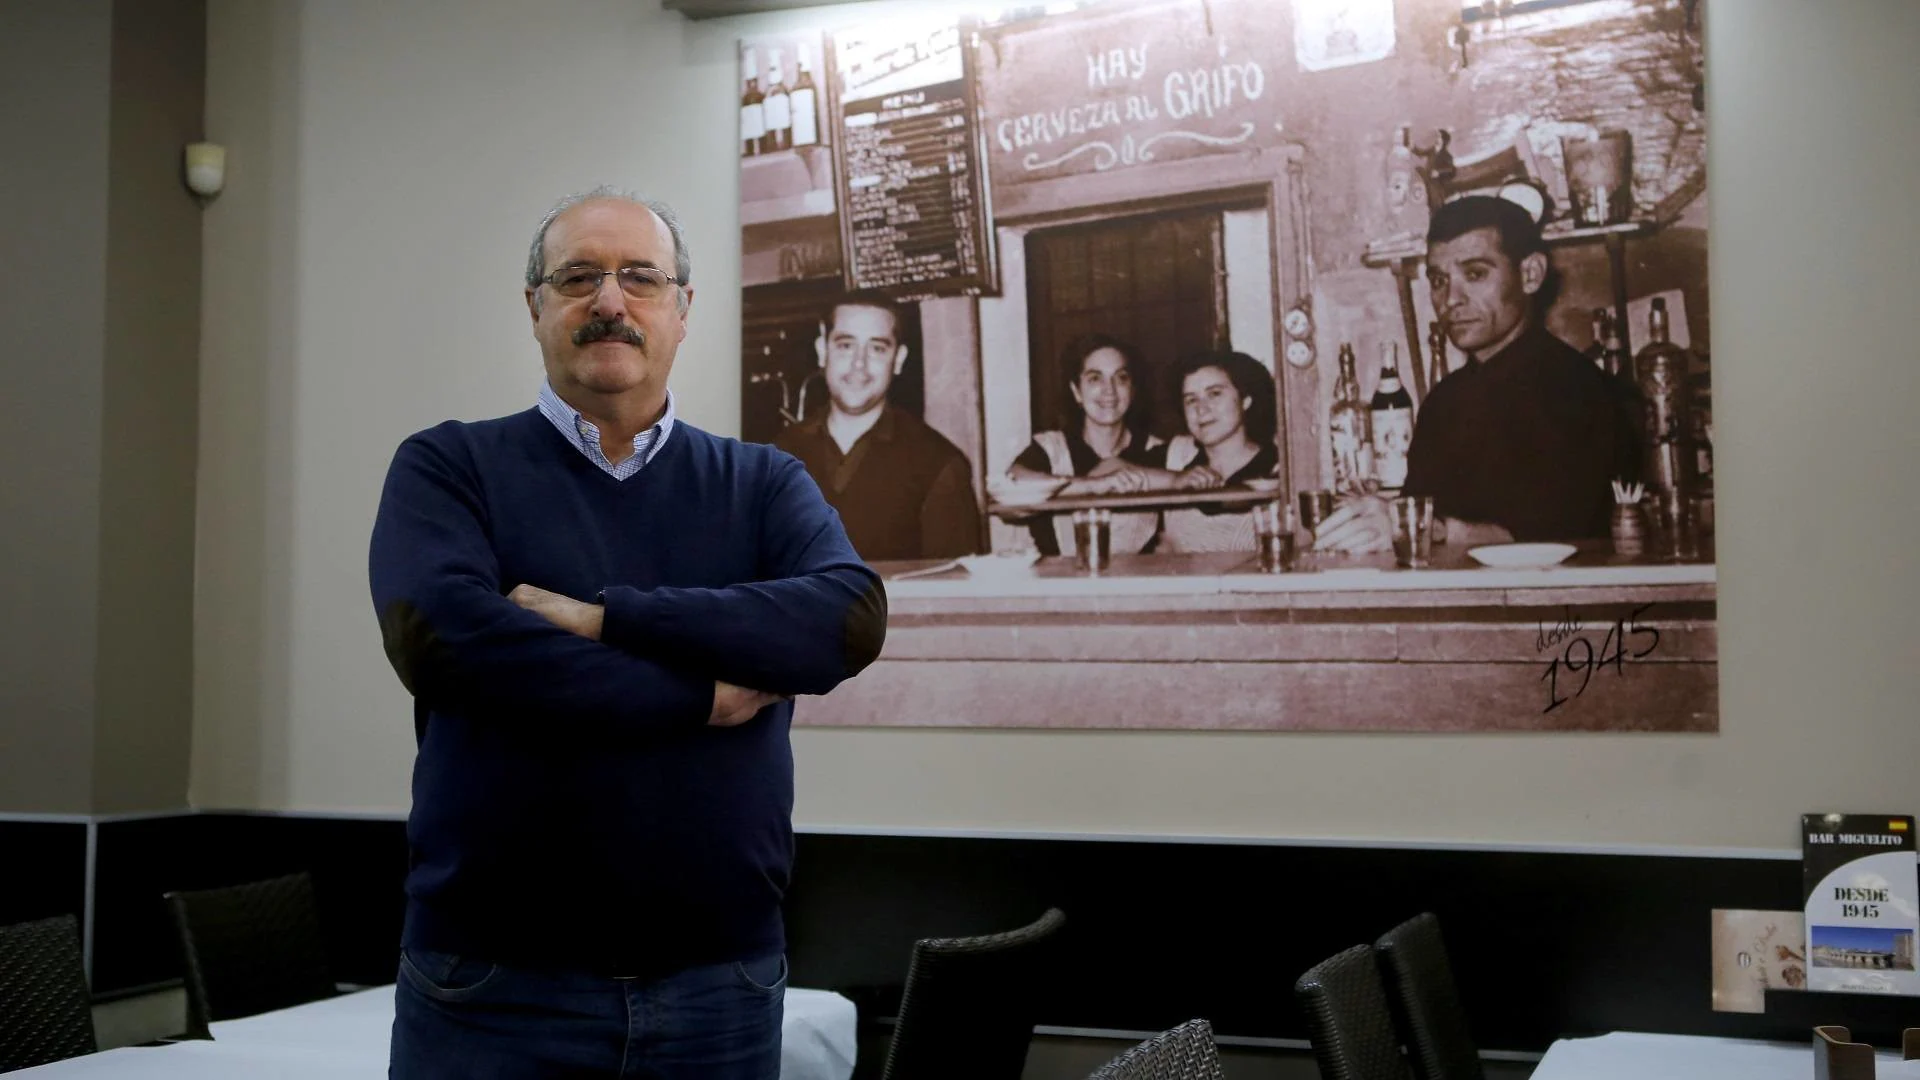 Francisco Cano, Bar Miguelito: "El pescado ha sido siempre nuestro producto estrella"